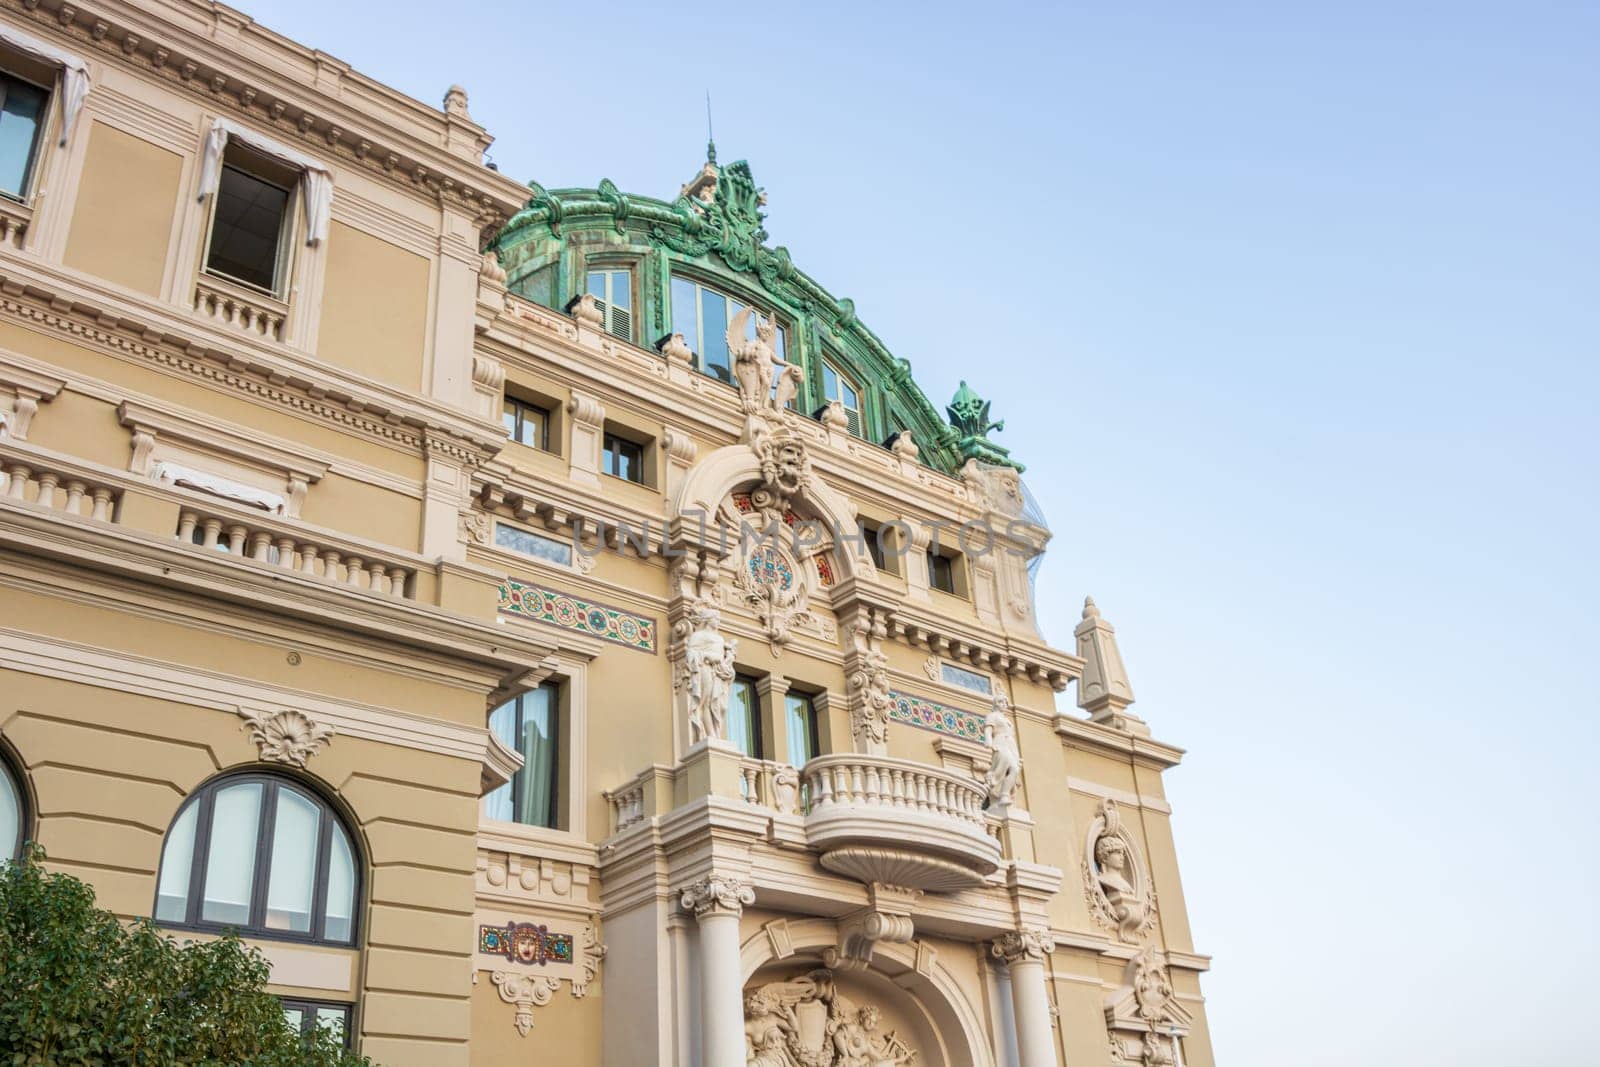 The Monte Carlo Casino, Principality of Monaco, French Riviera